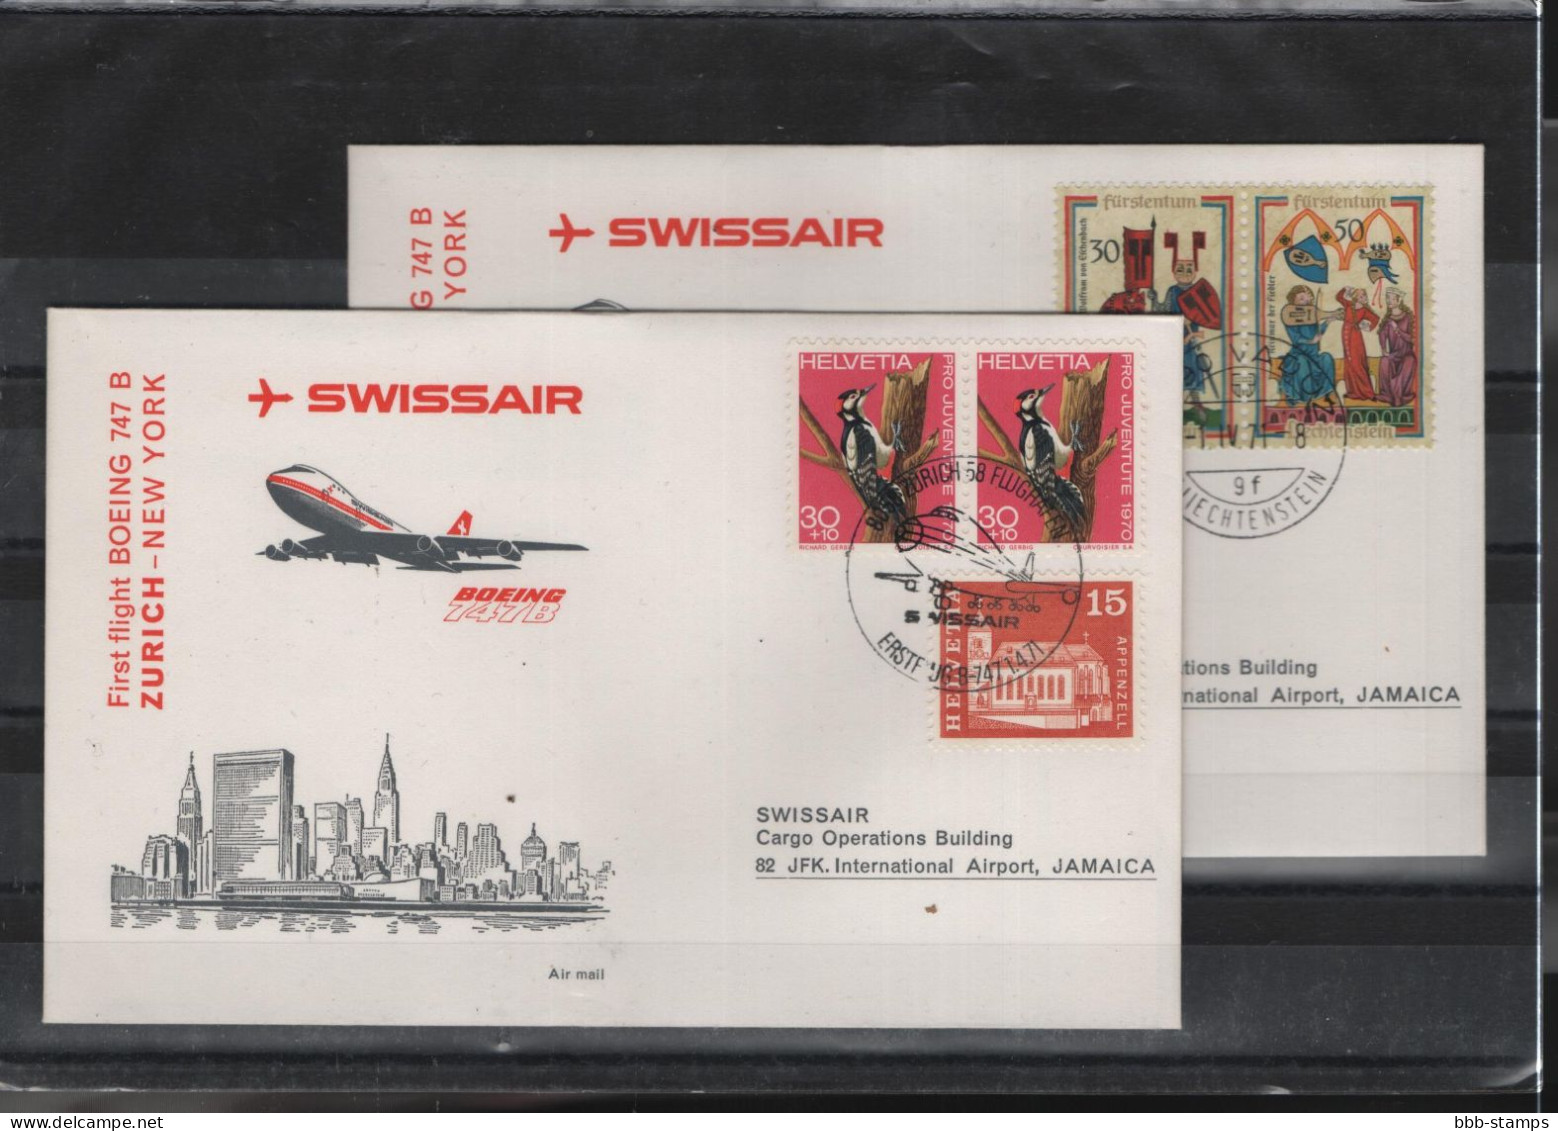 Schweiz Luftpost FFC Swissair 1.4.1971 Zürich - New York - First Flight Covers